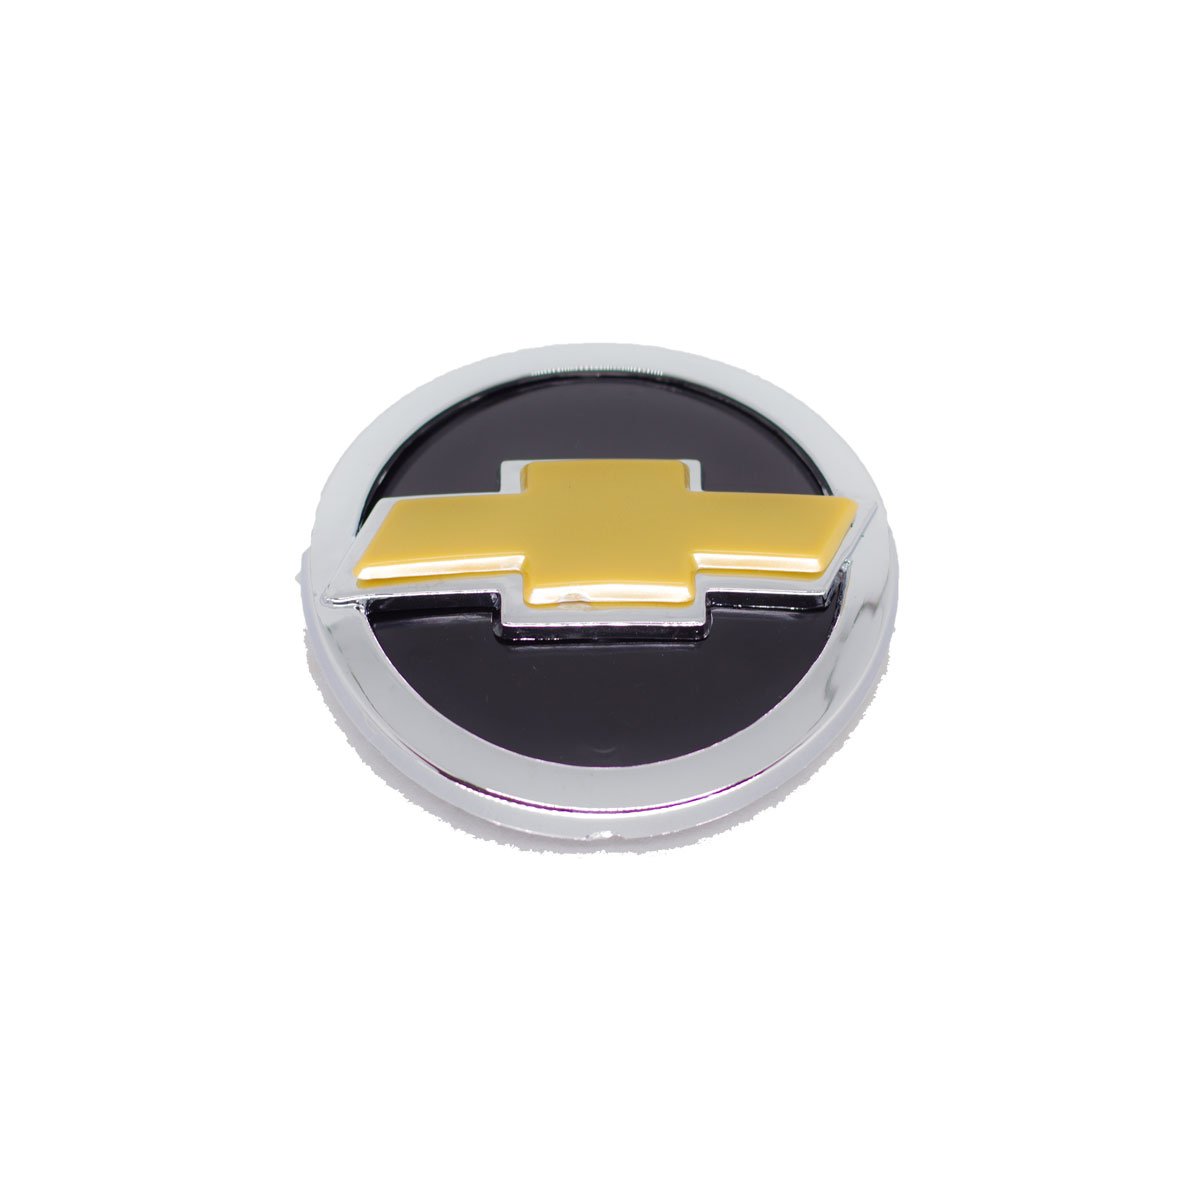 Emblema Grade Corsa Classic 03/ Dourado